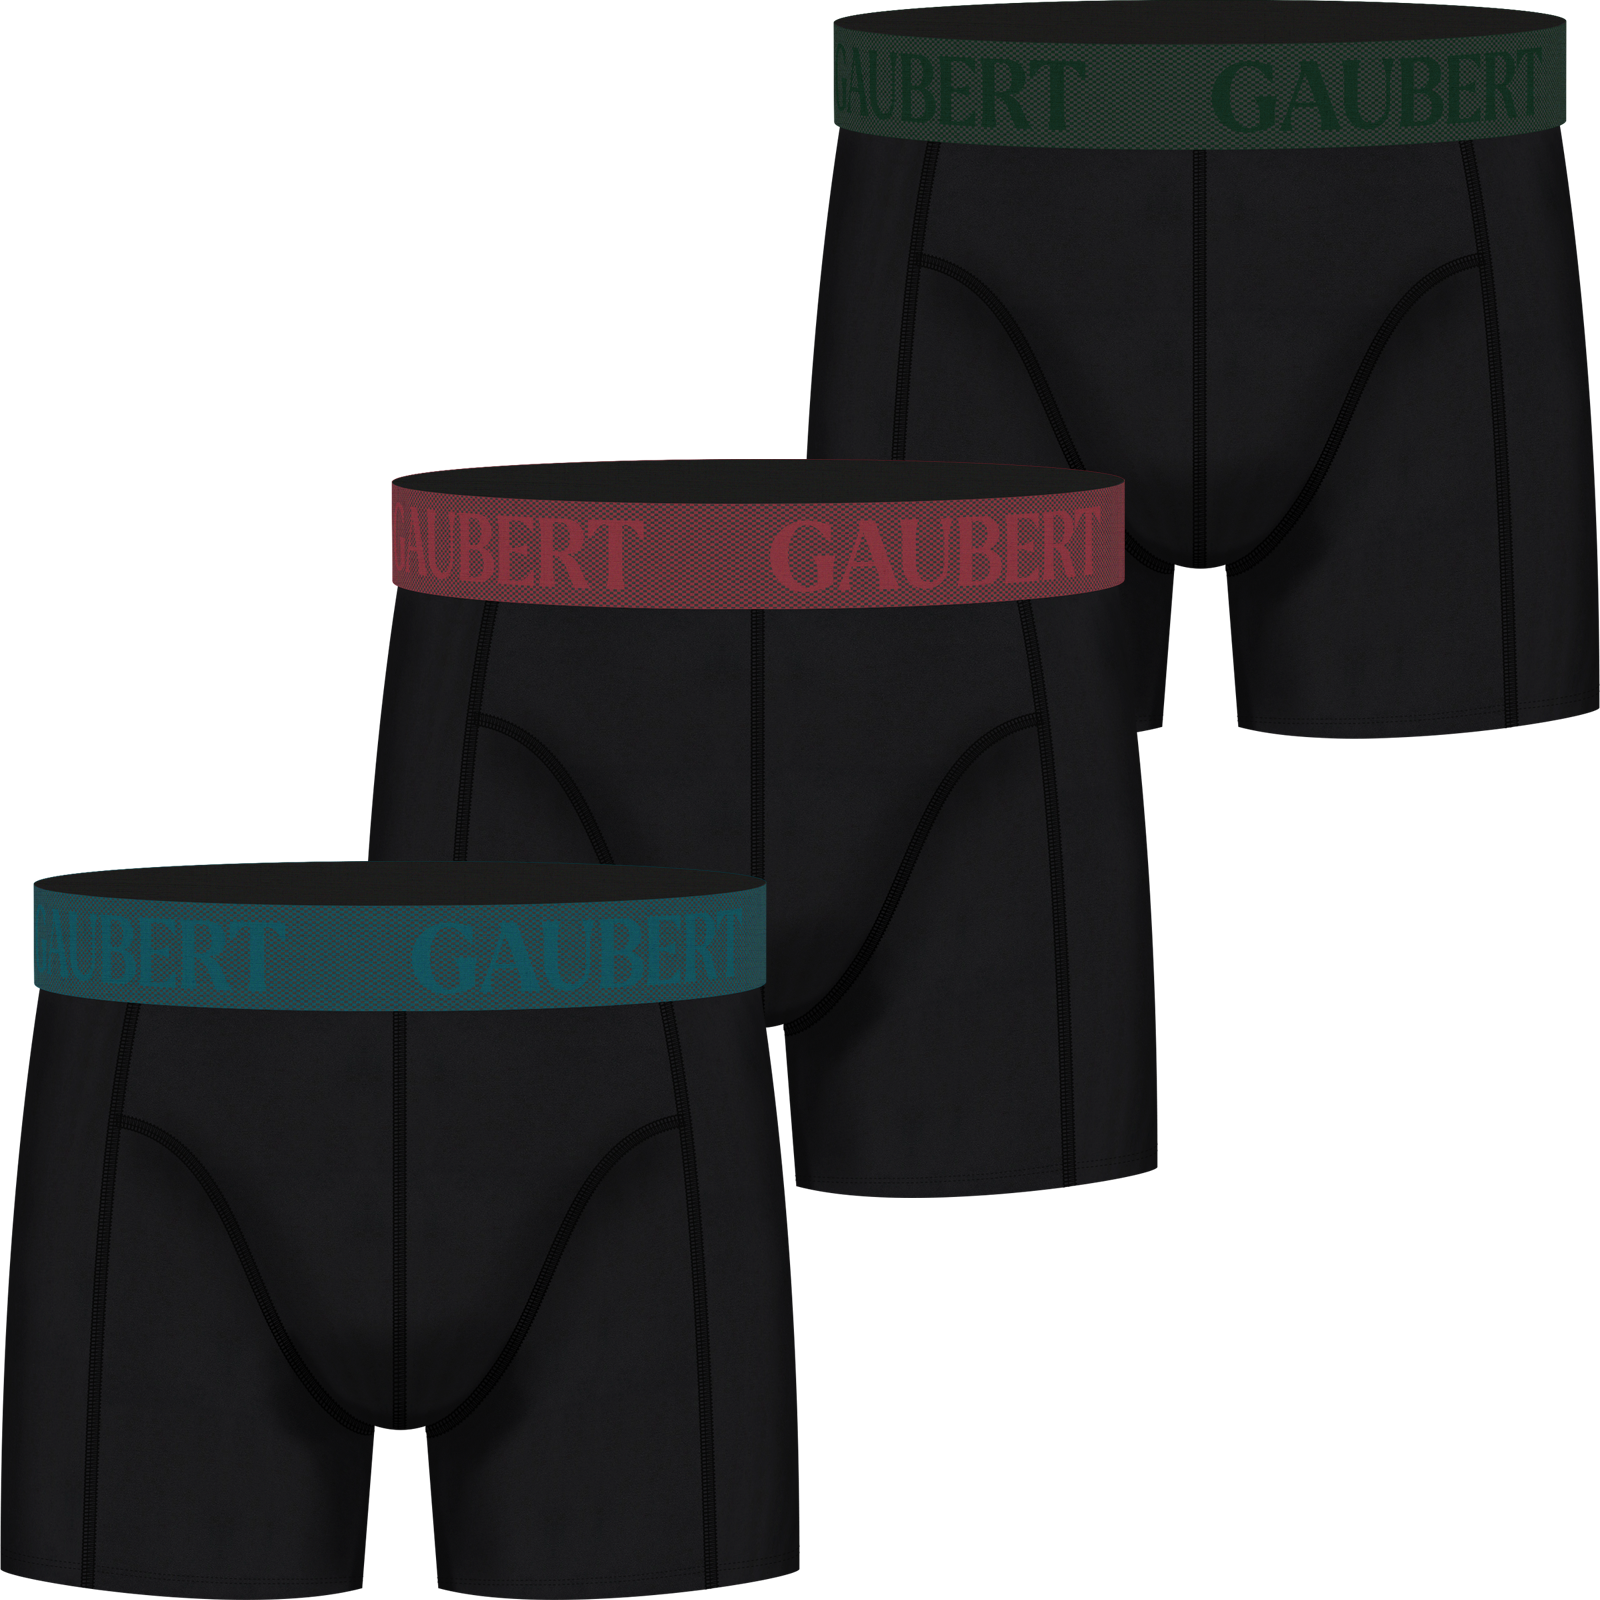 Gaubert 3 pak heren boxershorts bamboe set 10 XL